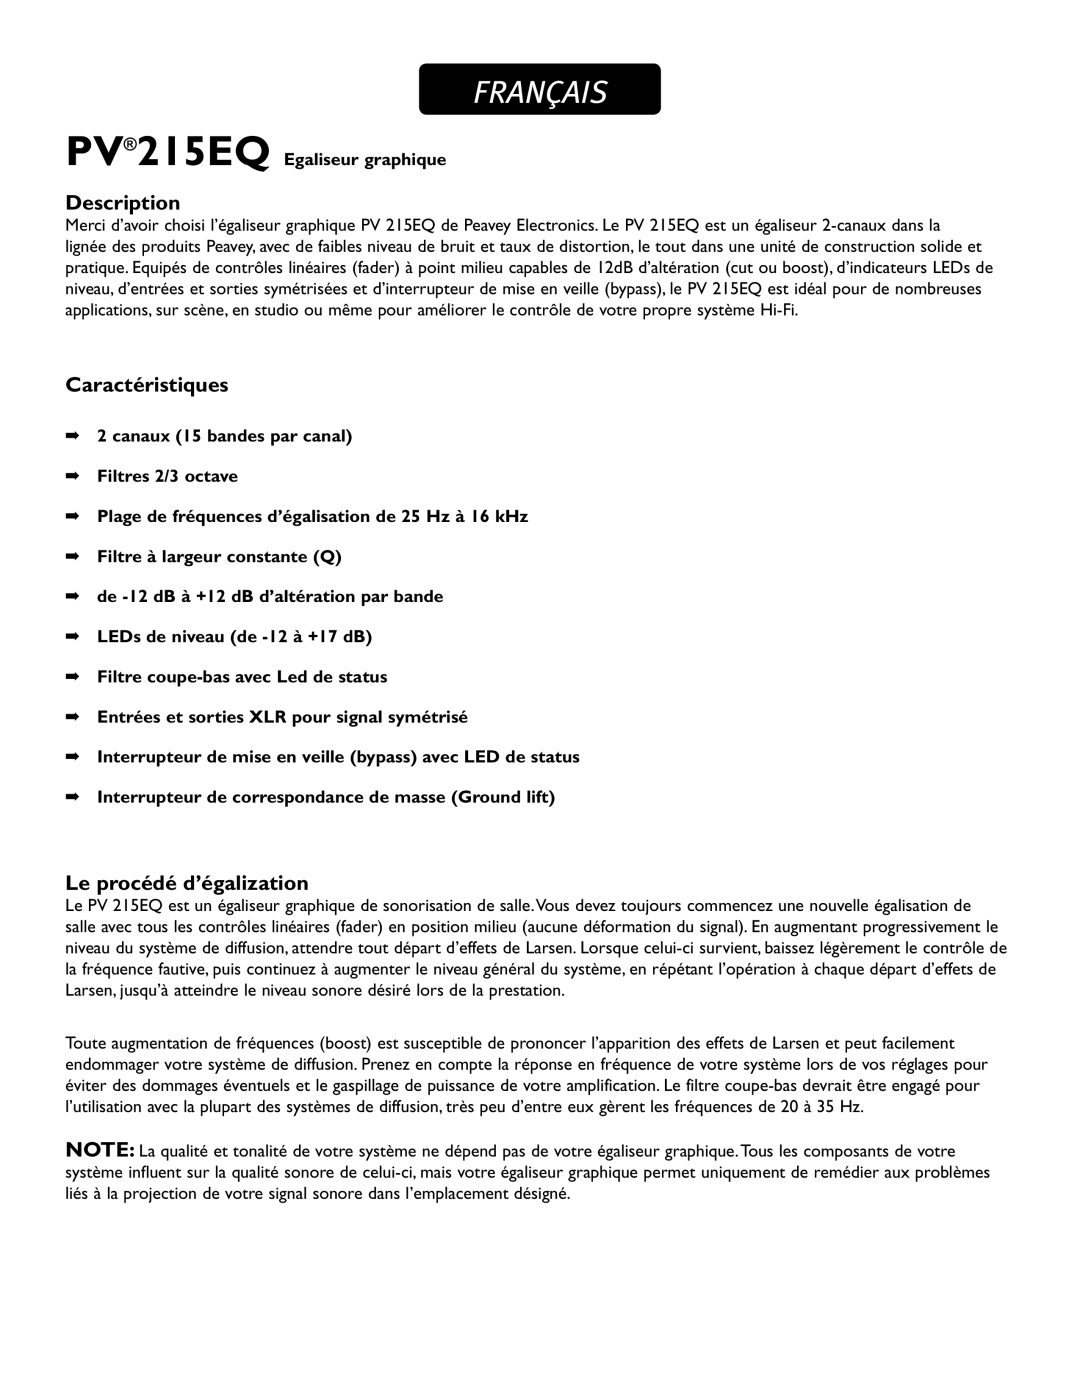 Peavey PV215EQ manual Français, Caractéristiques, Le procédé d’égalization, Description 